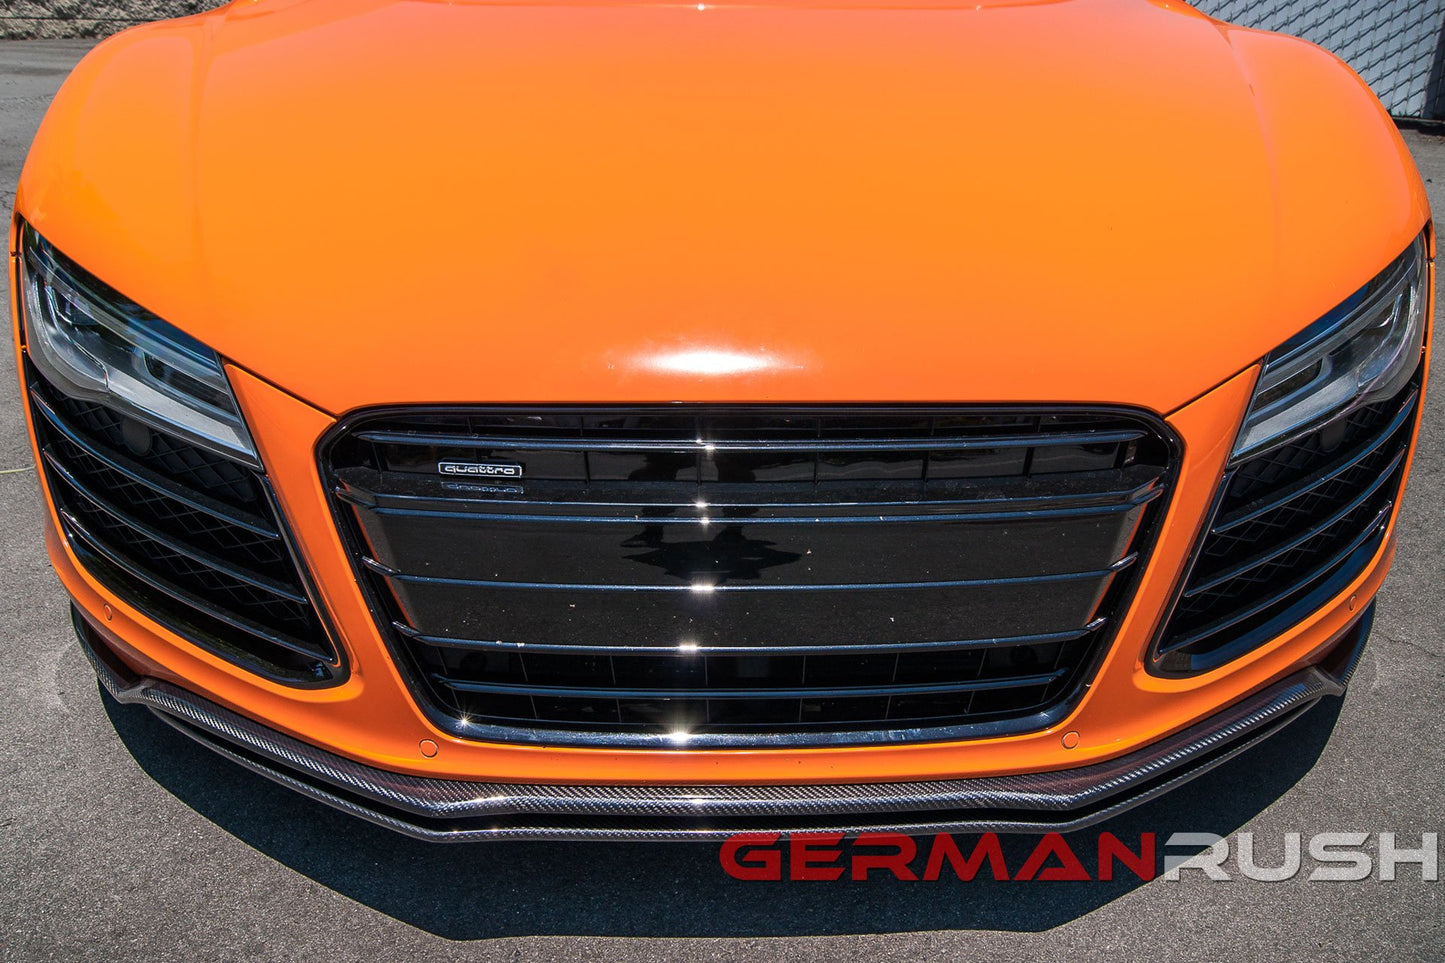 Front Splitter German Rush Dual for Audi R8 2007-2015 in Carbon Fiber or Fiberglass